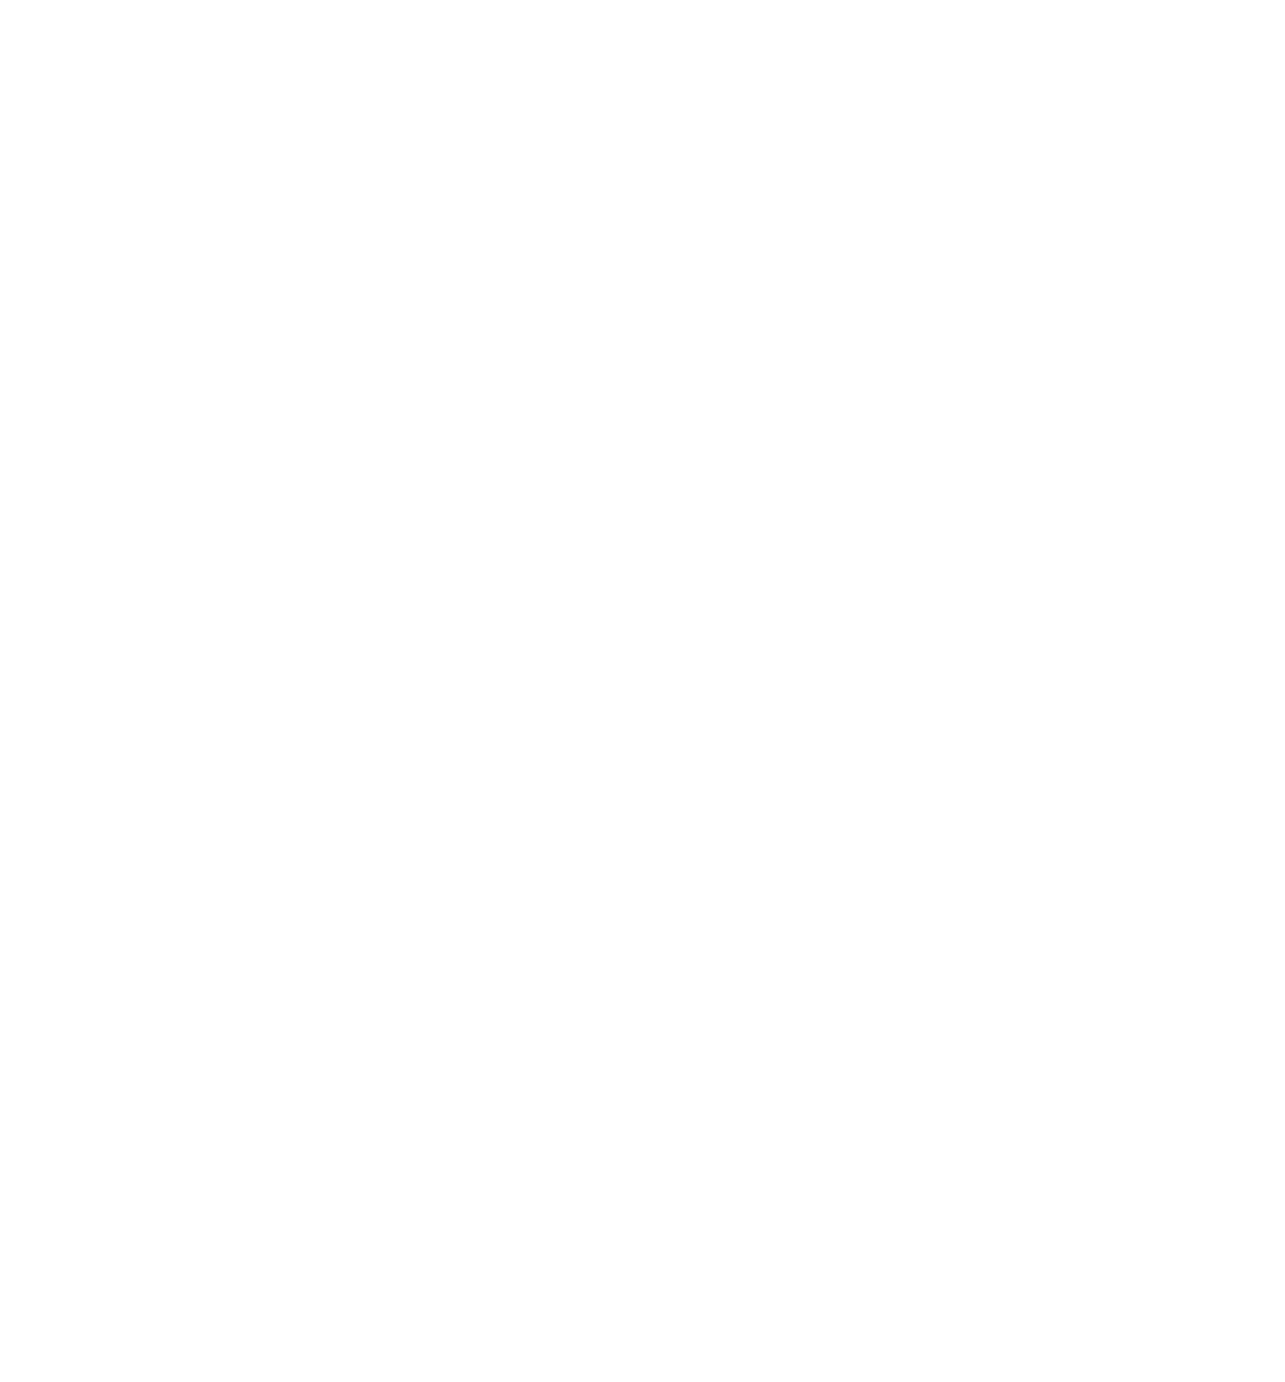 Aerial Services, Inc. (ASI)